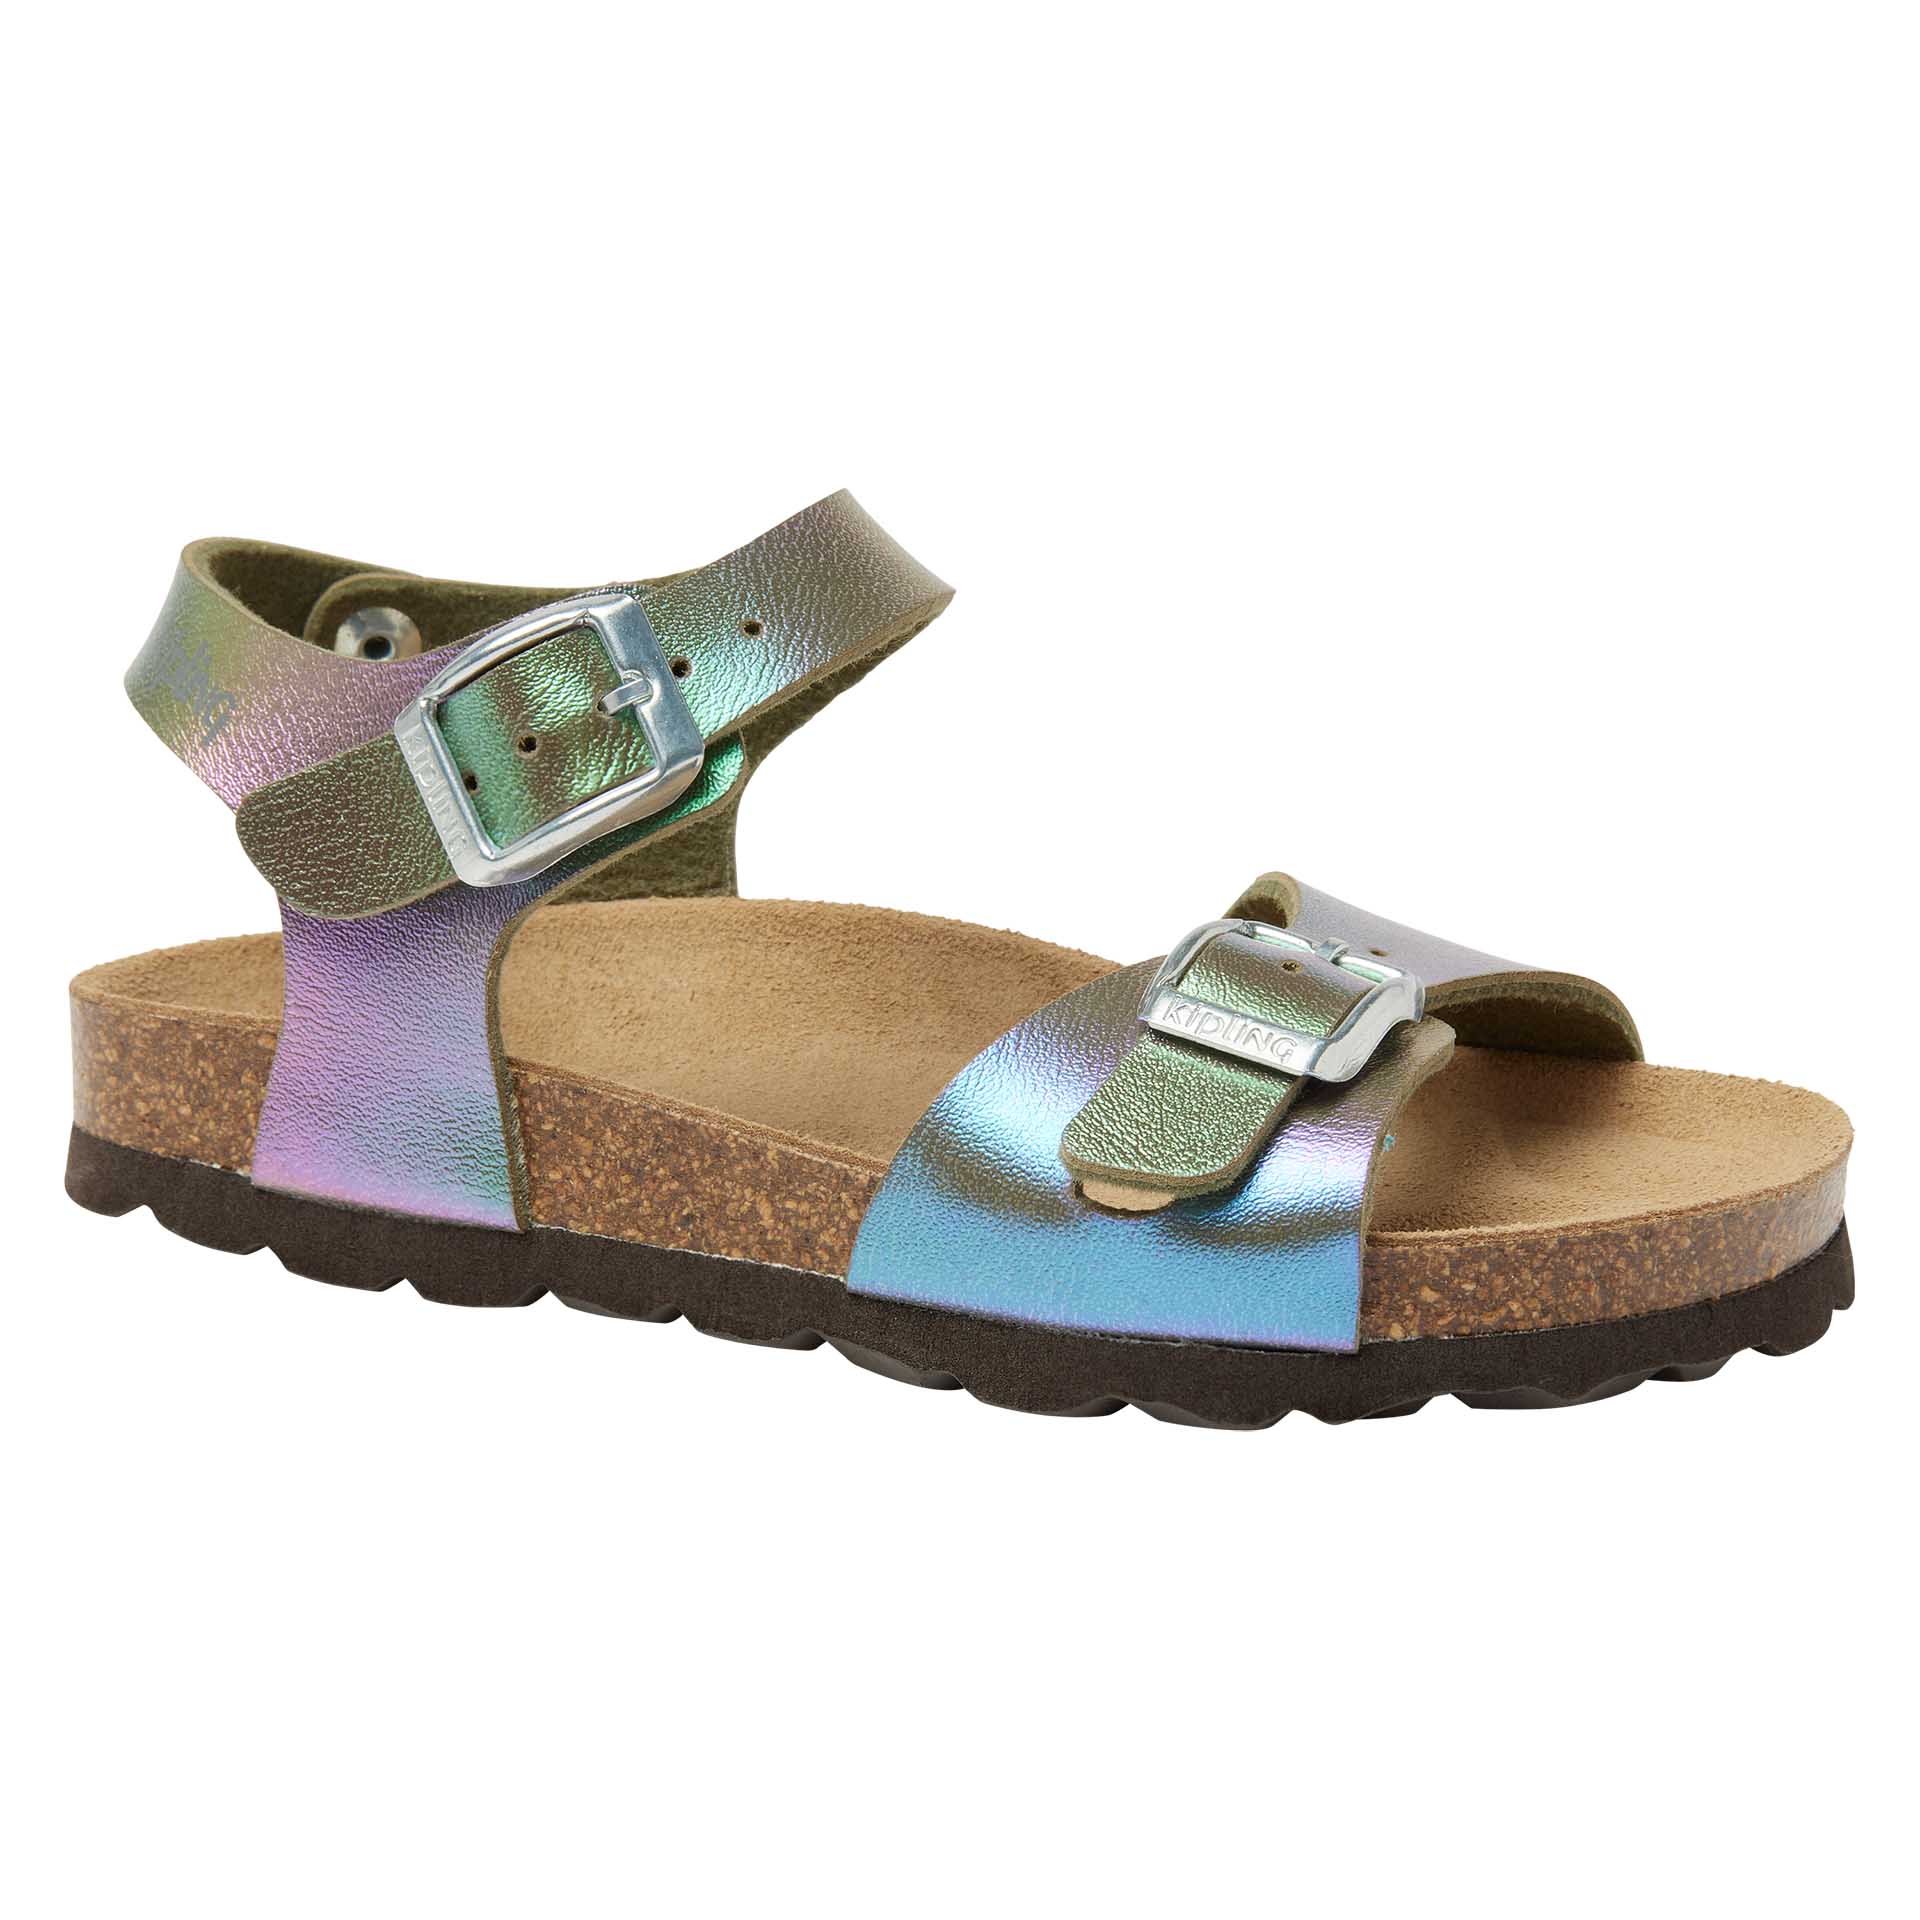 Meerkleurige  sandaal voor meisjes met dubbele gesp en regenboogeffect, Kipling